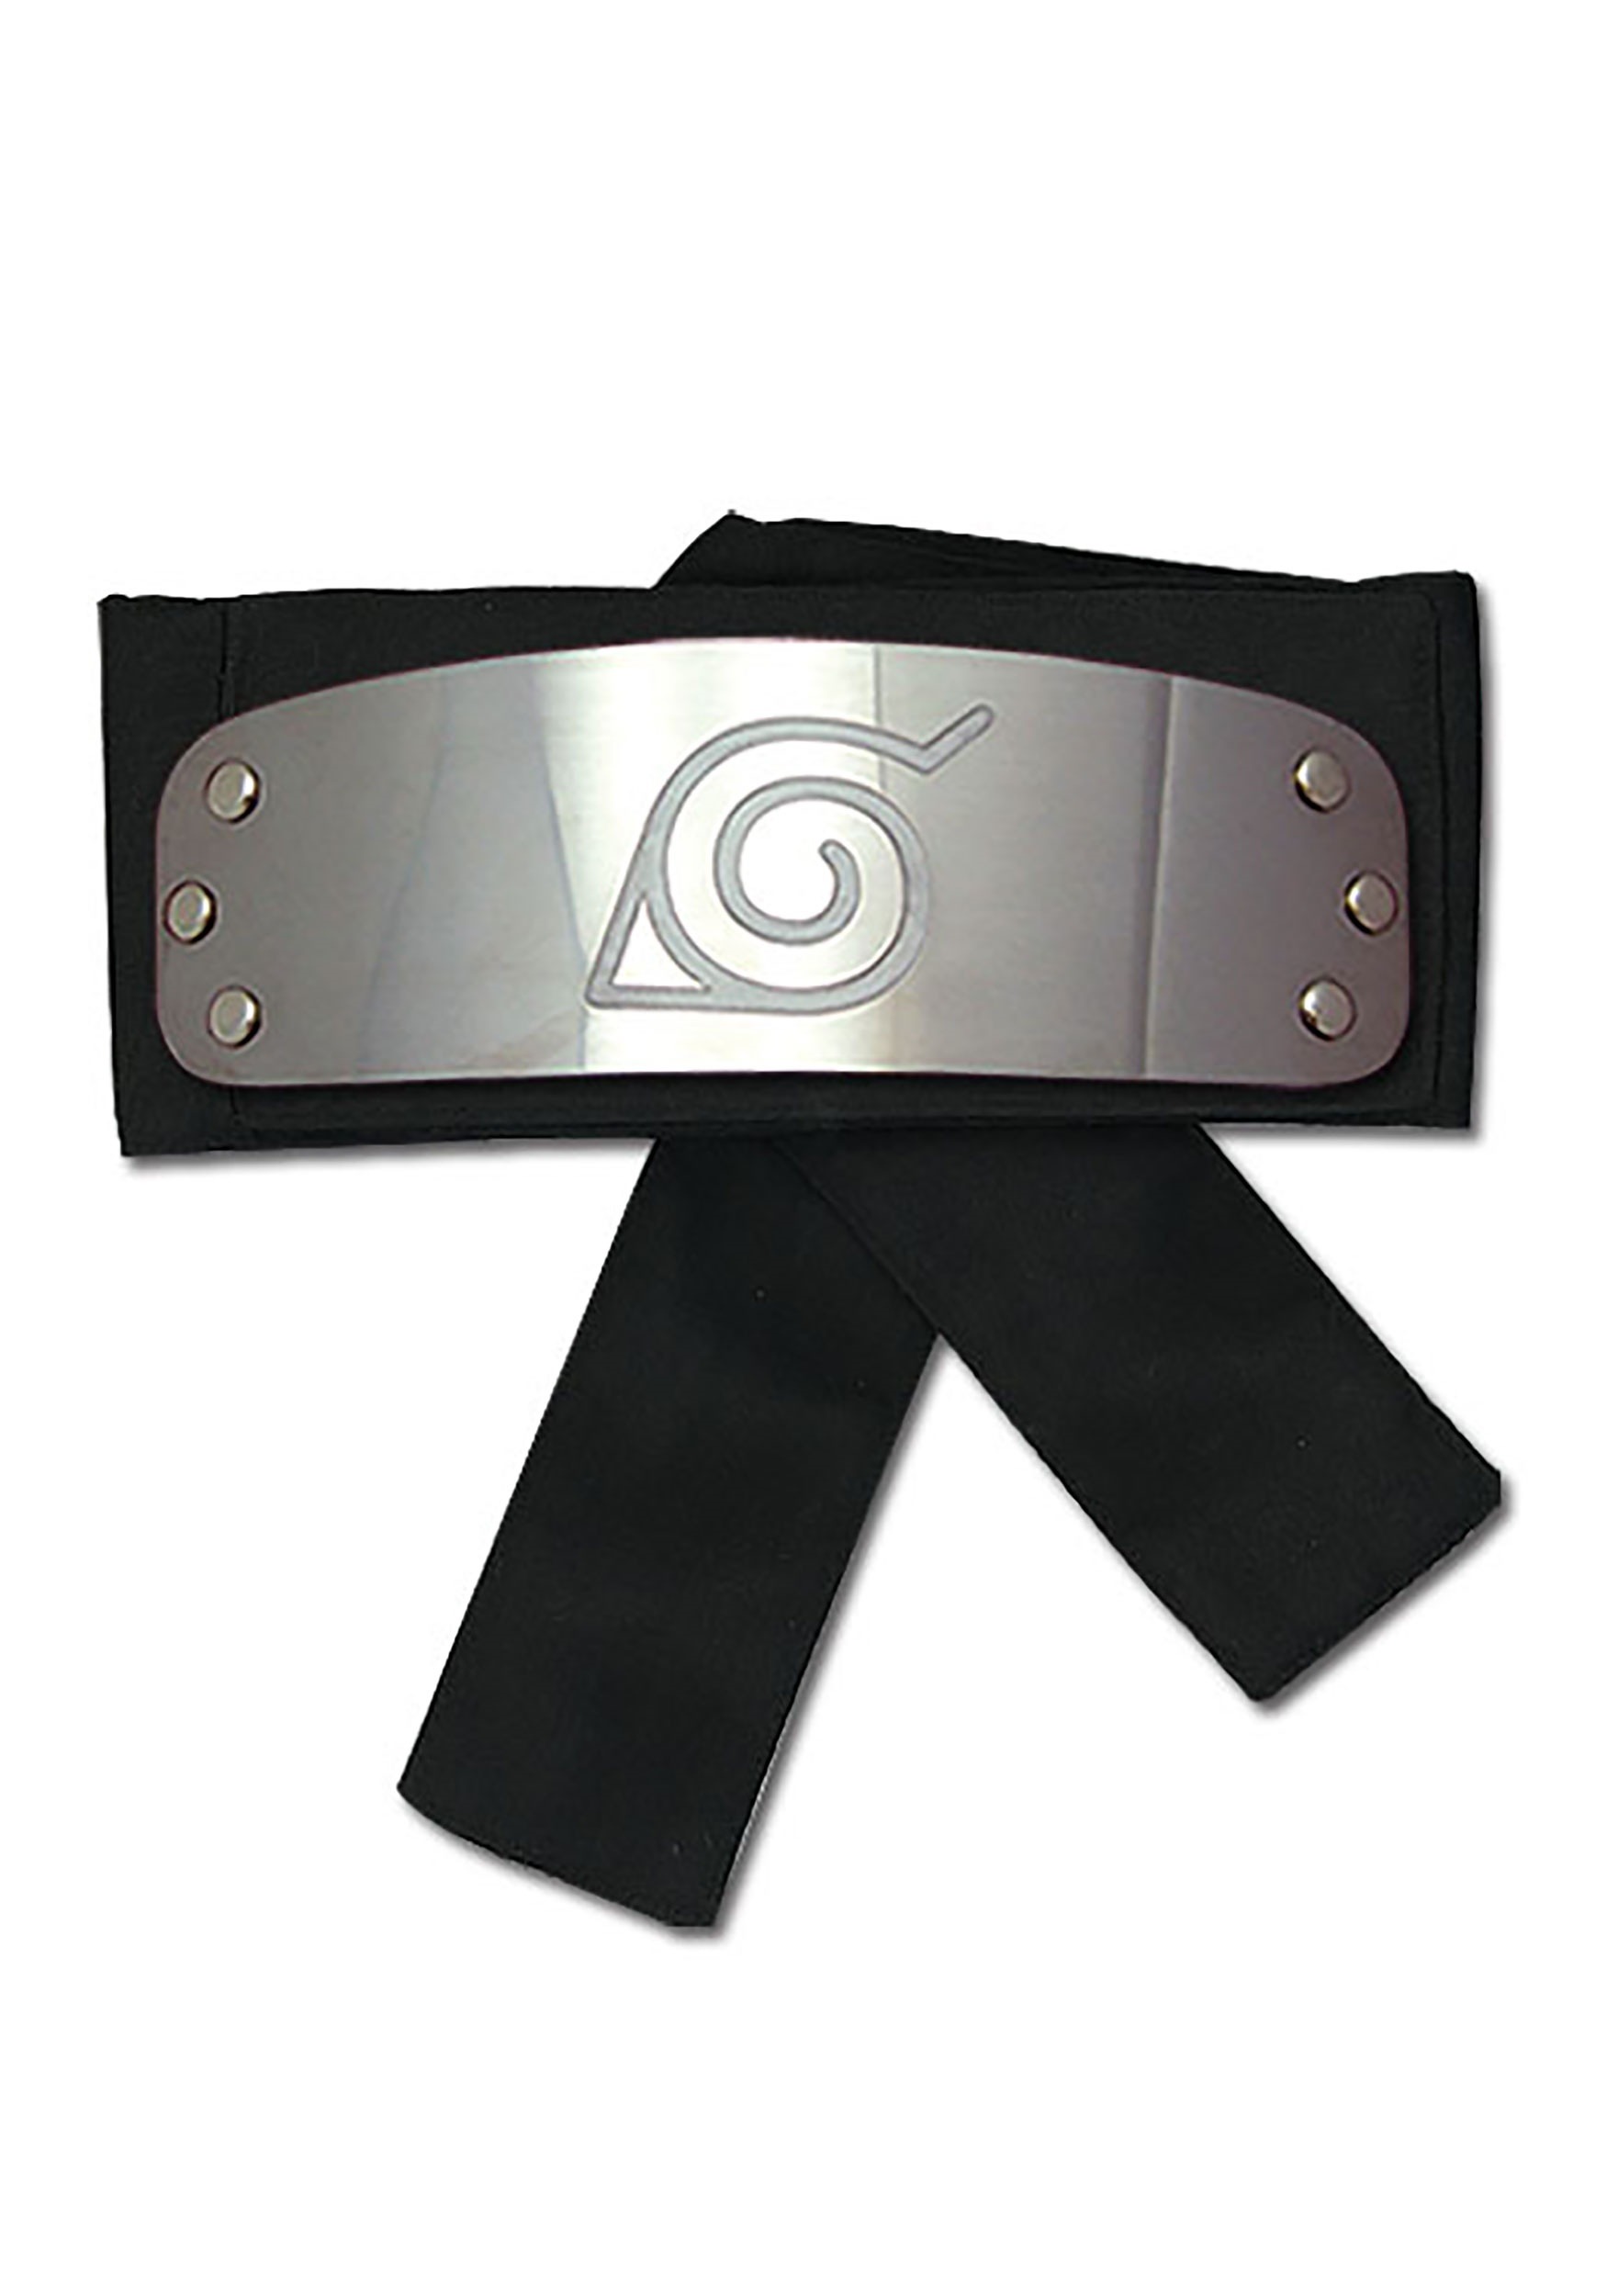 N A R U T O H E A D B A N D Zonealarm Results - black ninja headband roblox